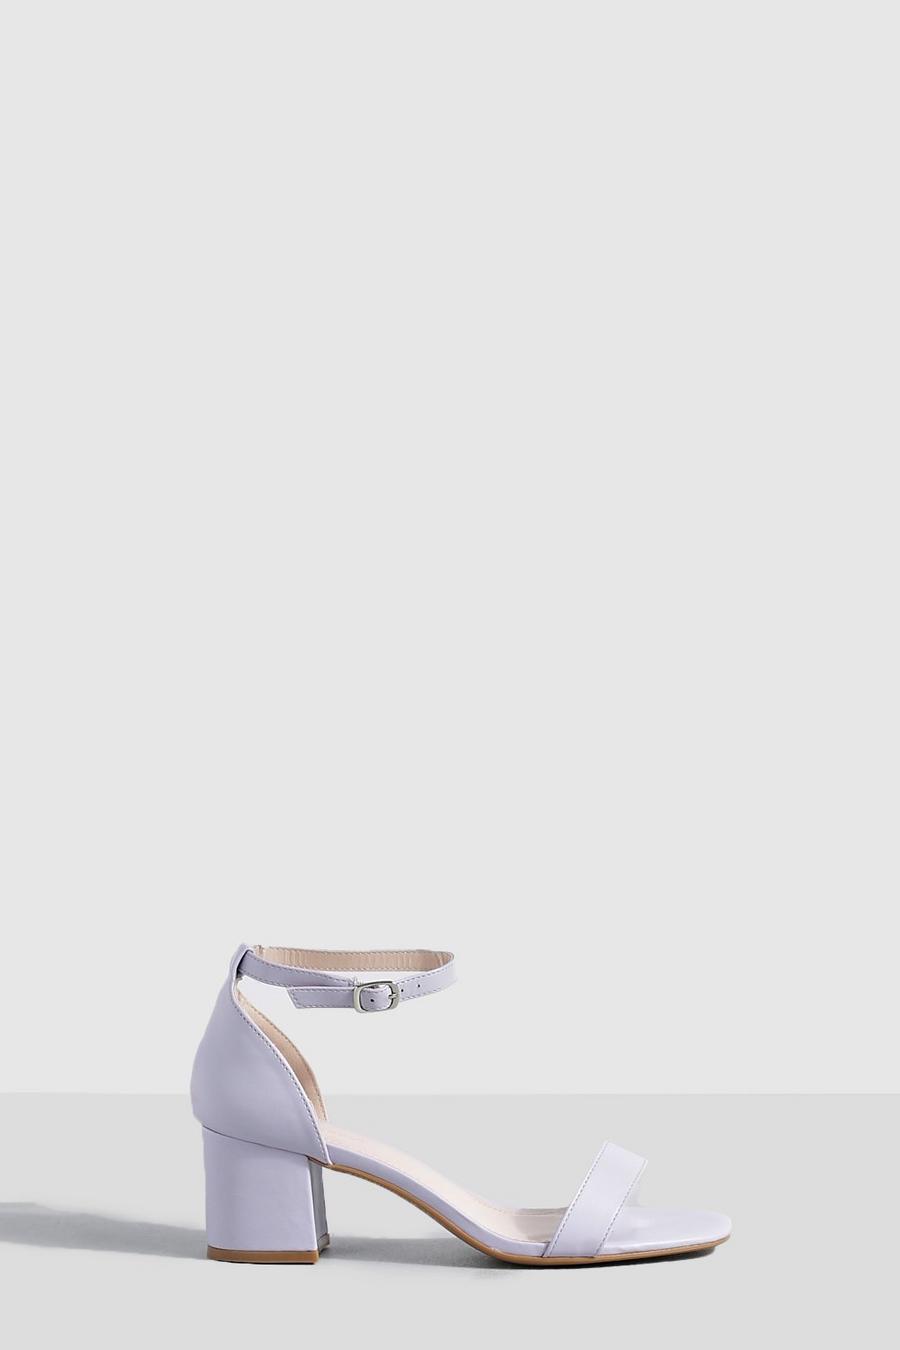 Tacones gruesos bajos minimalistas, Lilac